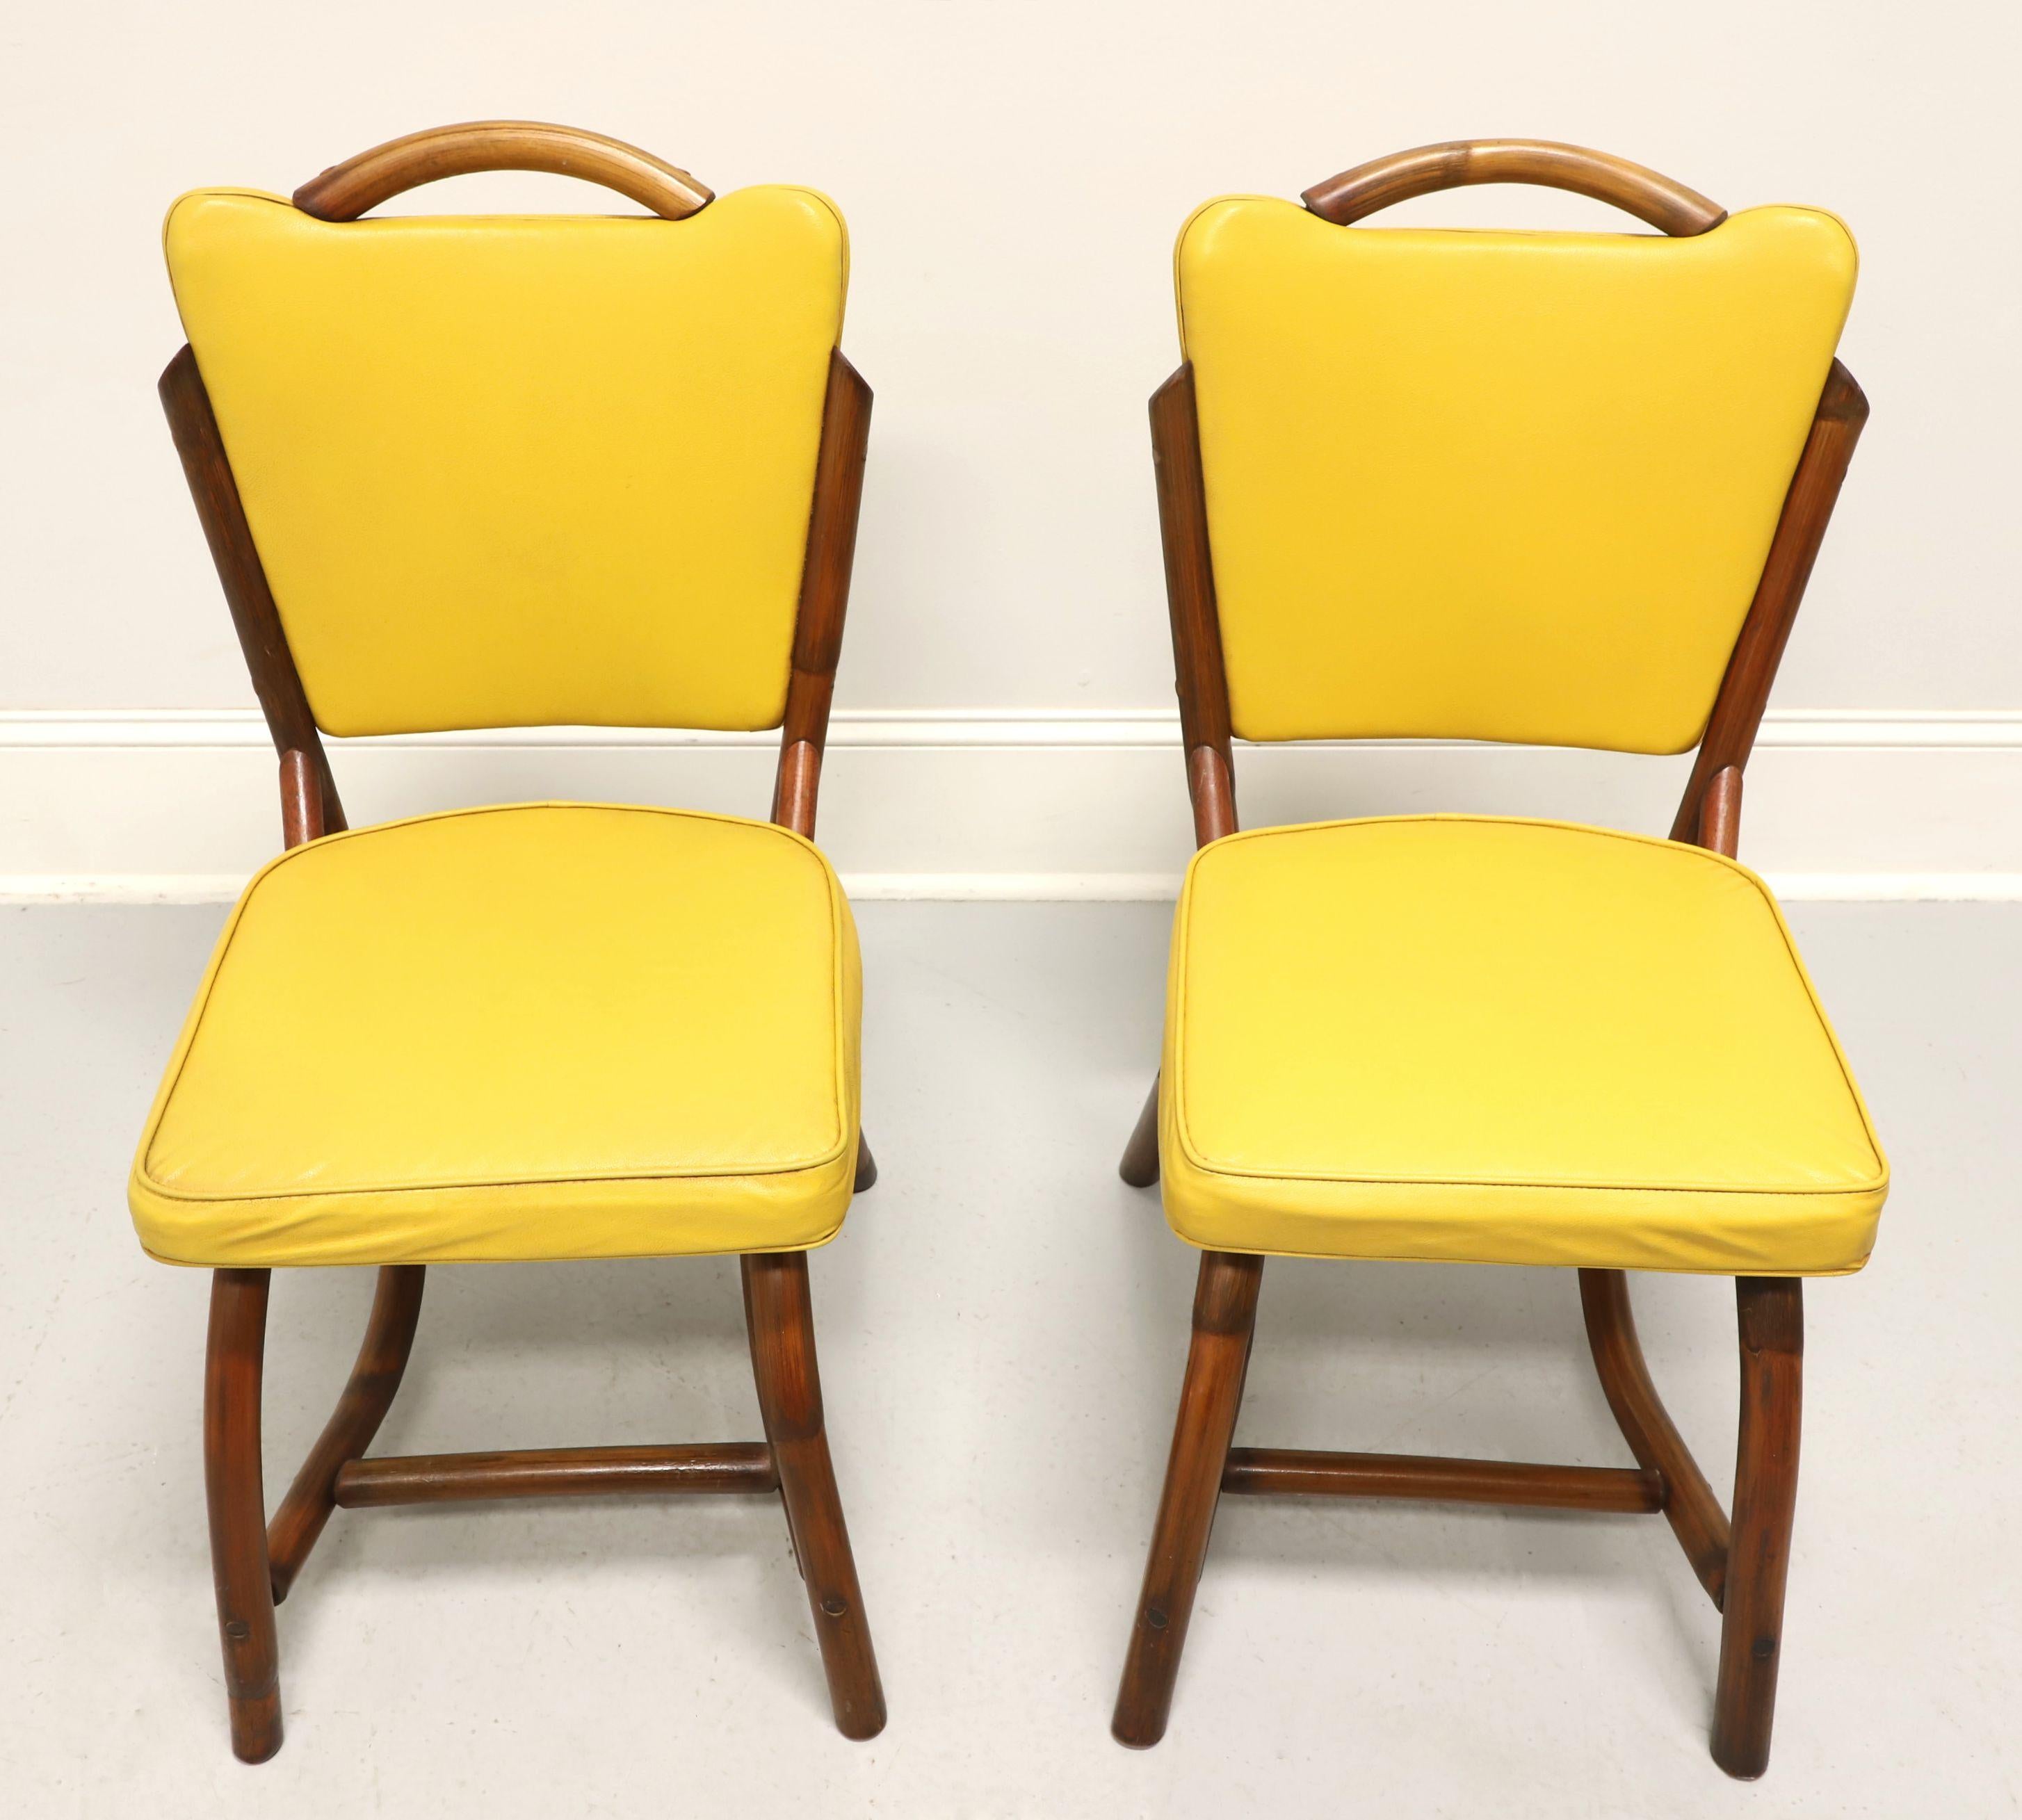 Ein Paar Beistellstühle im Küstenstil aus der Mitte des 20. Jahrhunderts von Bam-Tan Products. Rattan mit einem unverwechselbaren modernen Stil aus der Mitte des Jahrhunderts, abgerundete Rückenlehne mit ausgestellter Ecke, gelbes Vinyl gepolsterte